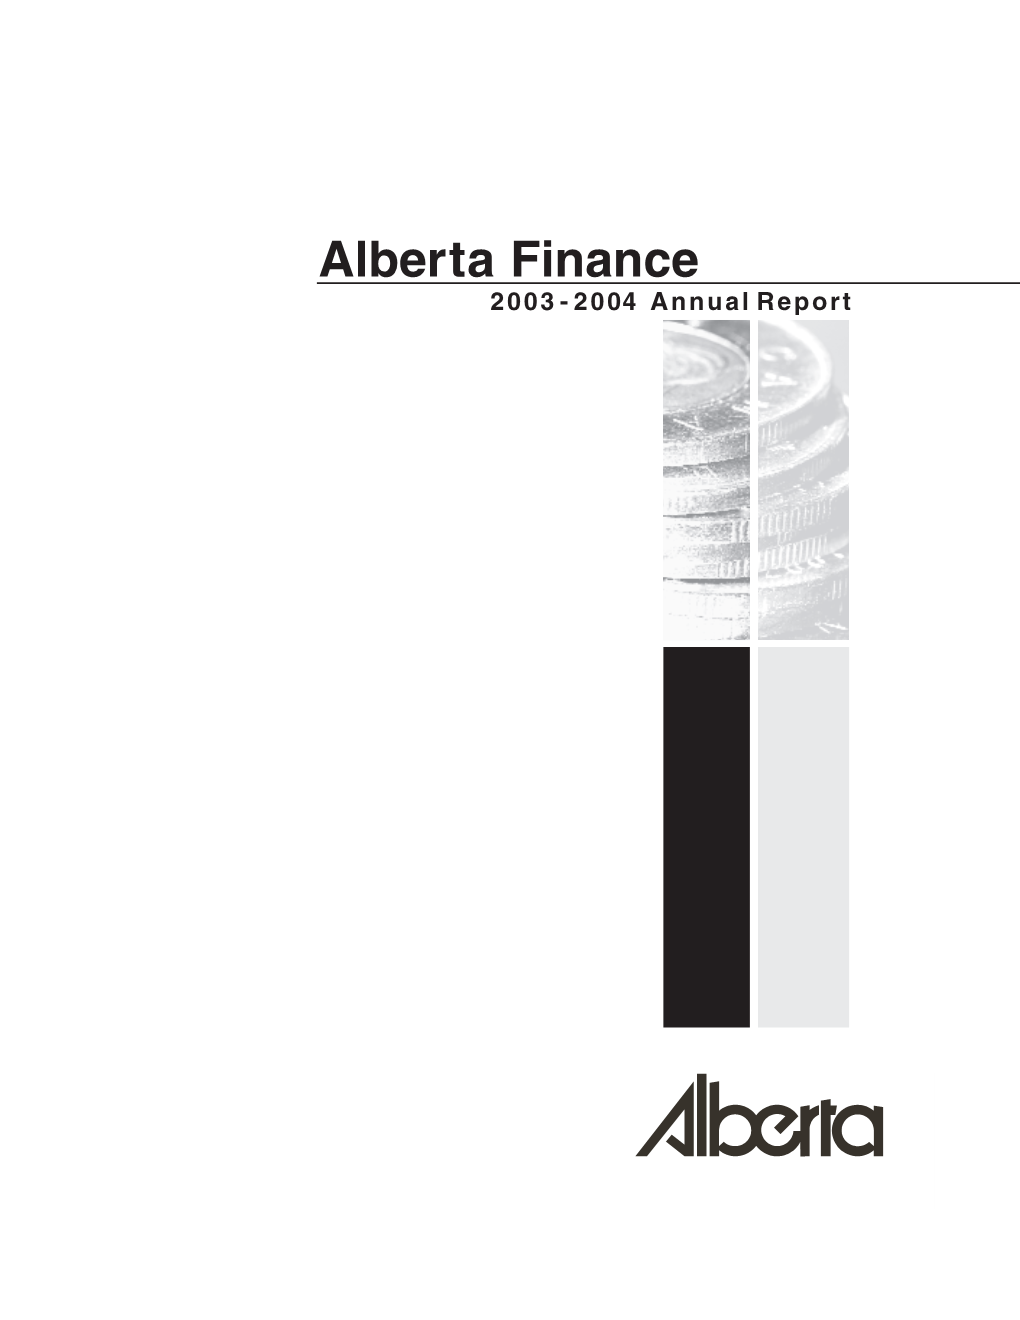 2003-04 Alberta Finance Annual Report